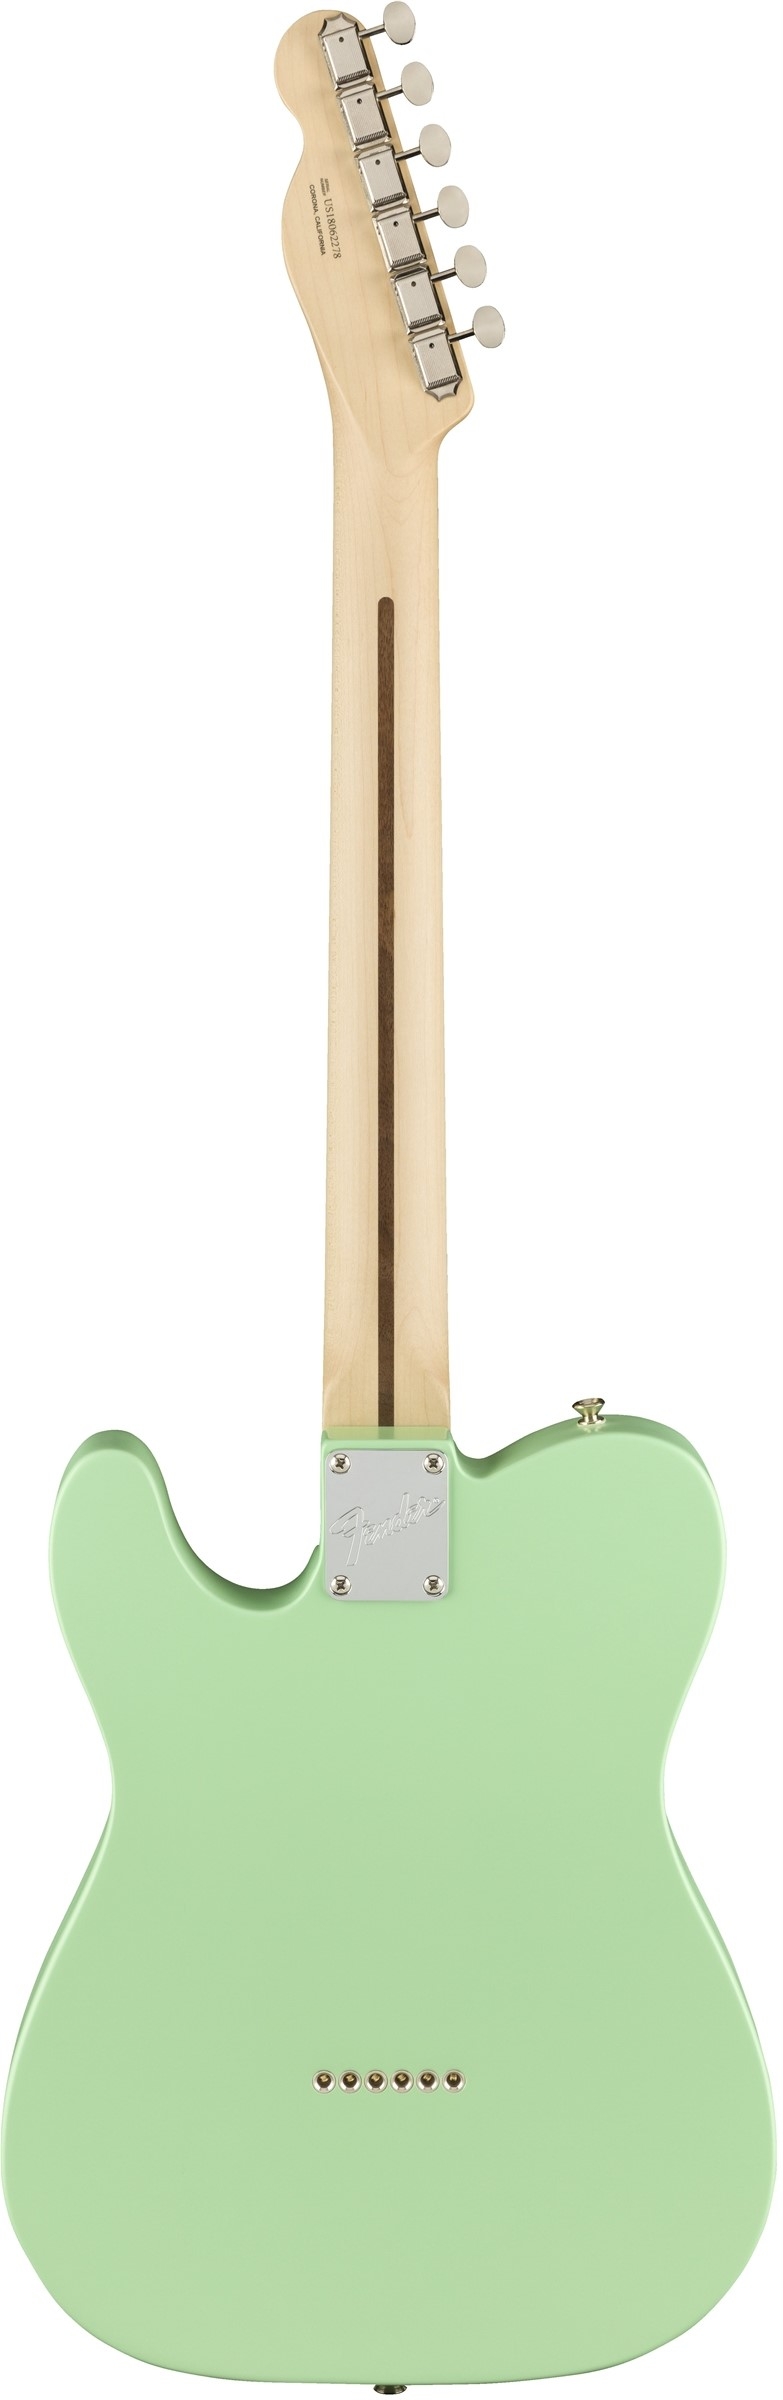 Fender American Performer Telecaster Humbucker Satin surf green